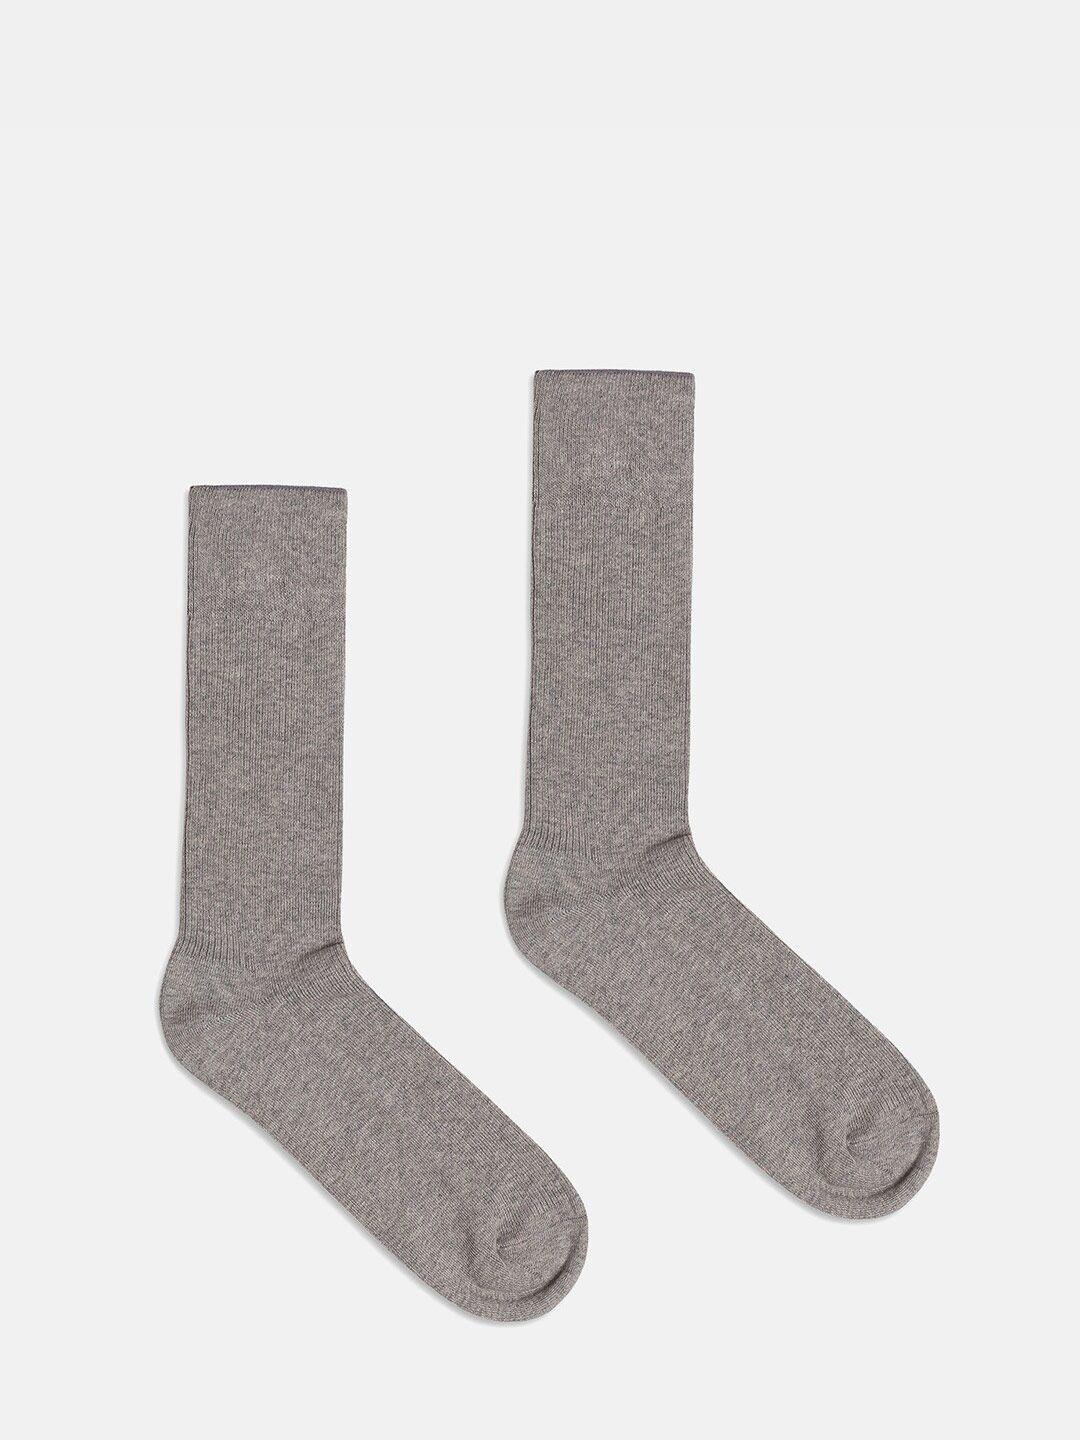 blackberrys-men-calf-length-socks